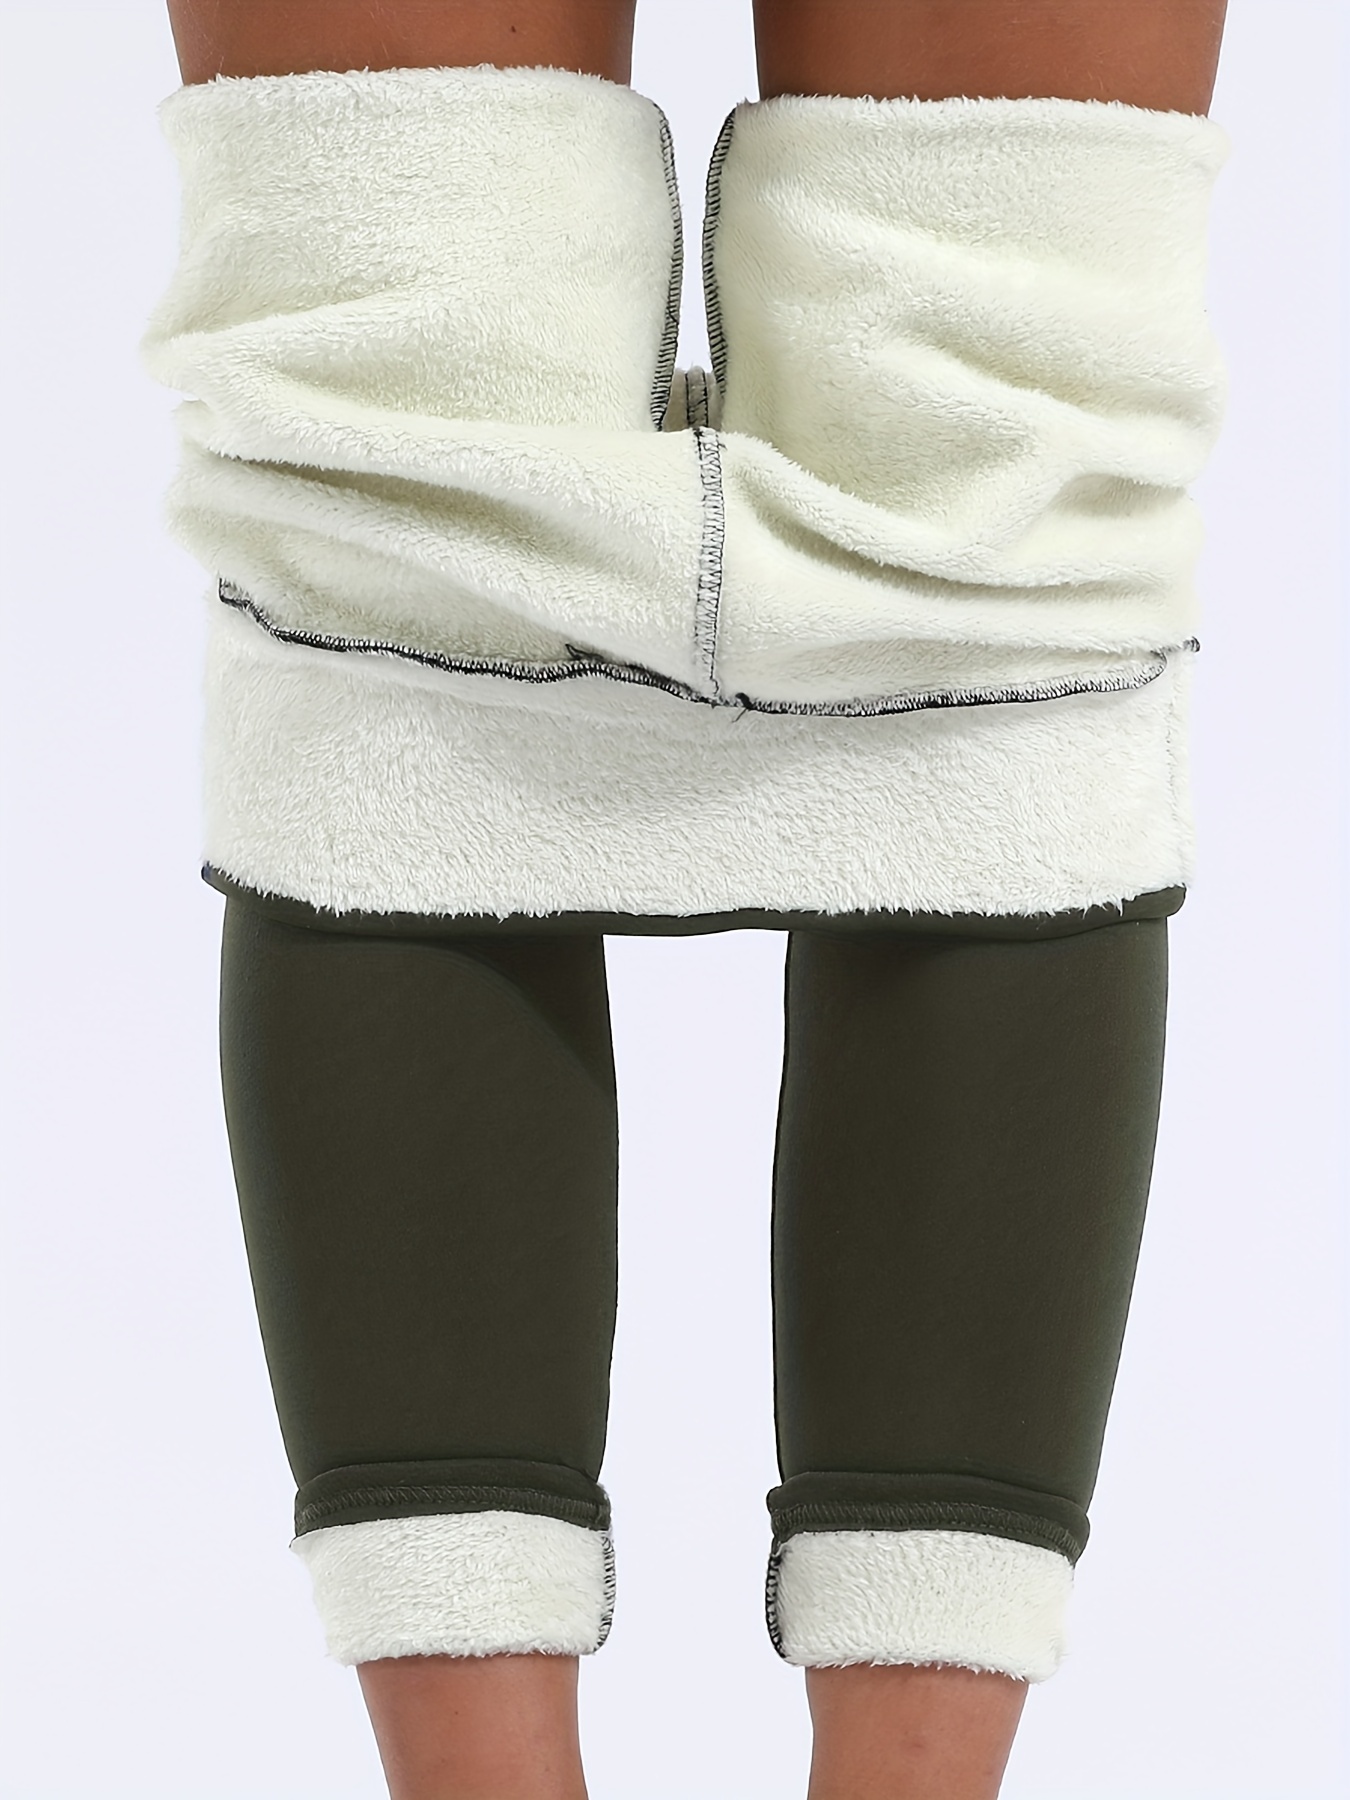 Leggings Chauds D'Hiver - Pantalon Chaussette Pour Femme Pantalon